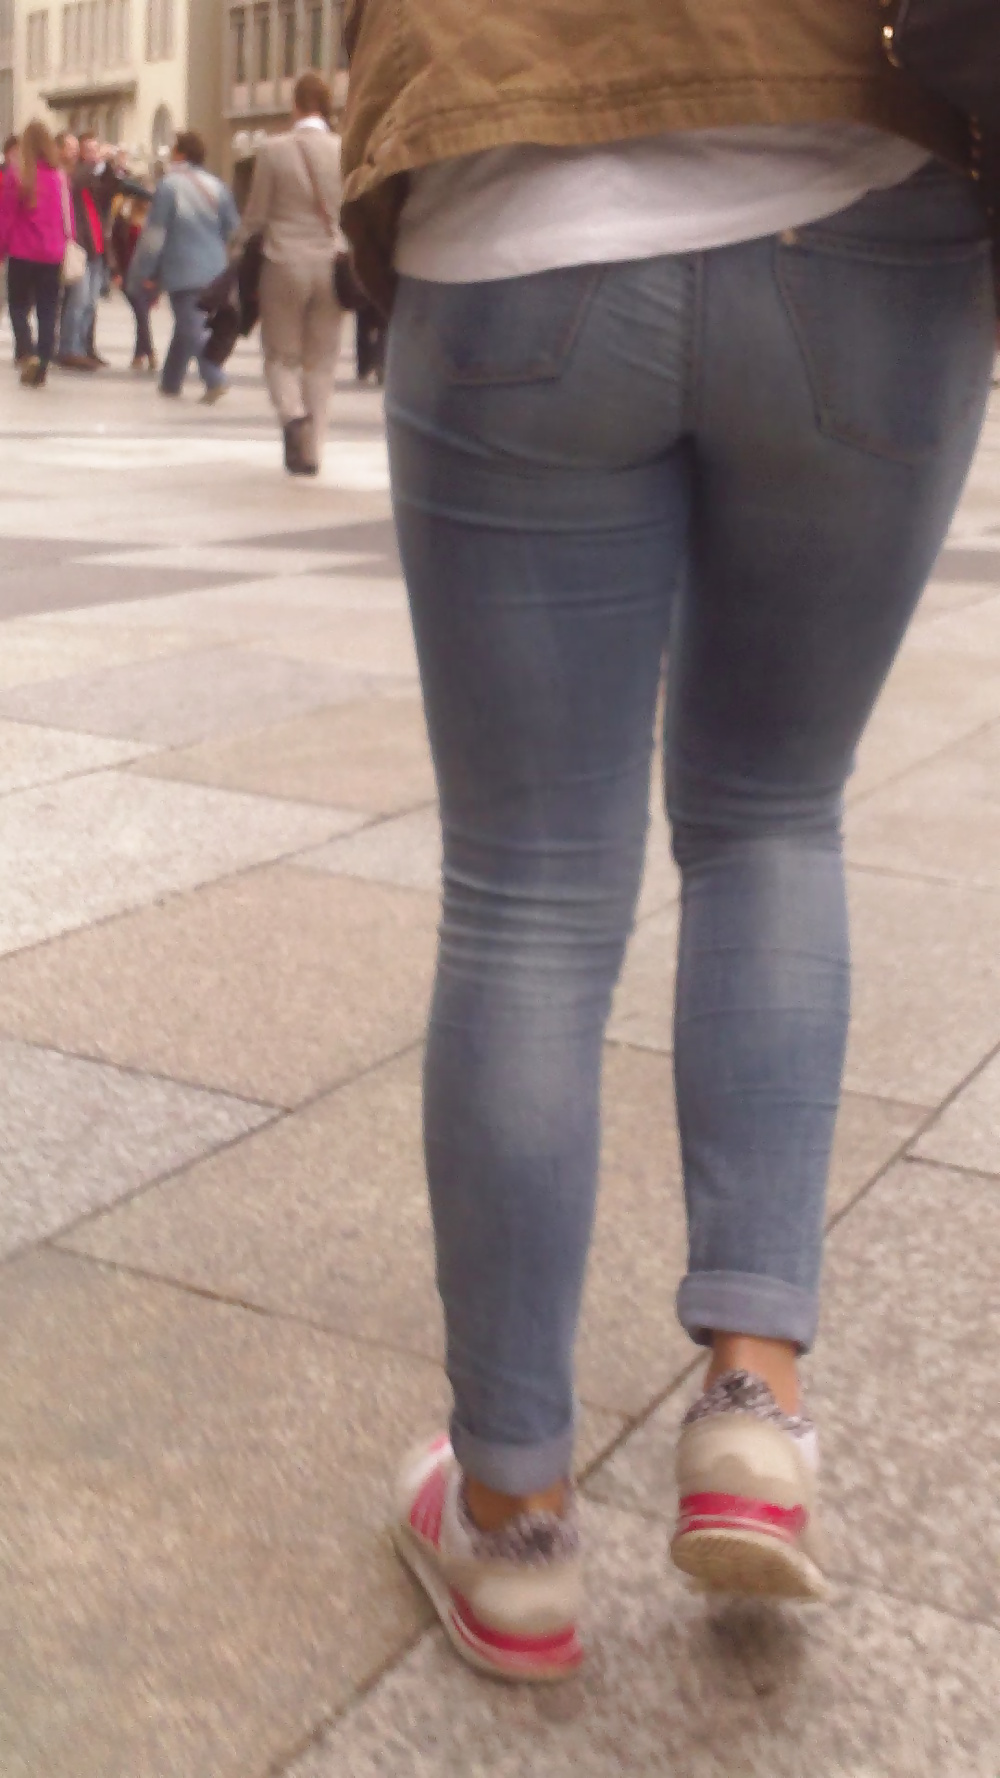 Populäre Jugendlich Mädchen Arsch & Hintern In Jeans Teil 6 #32010338